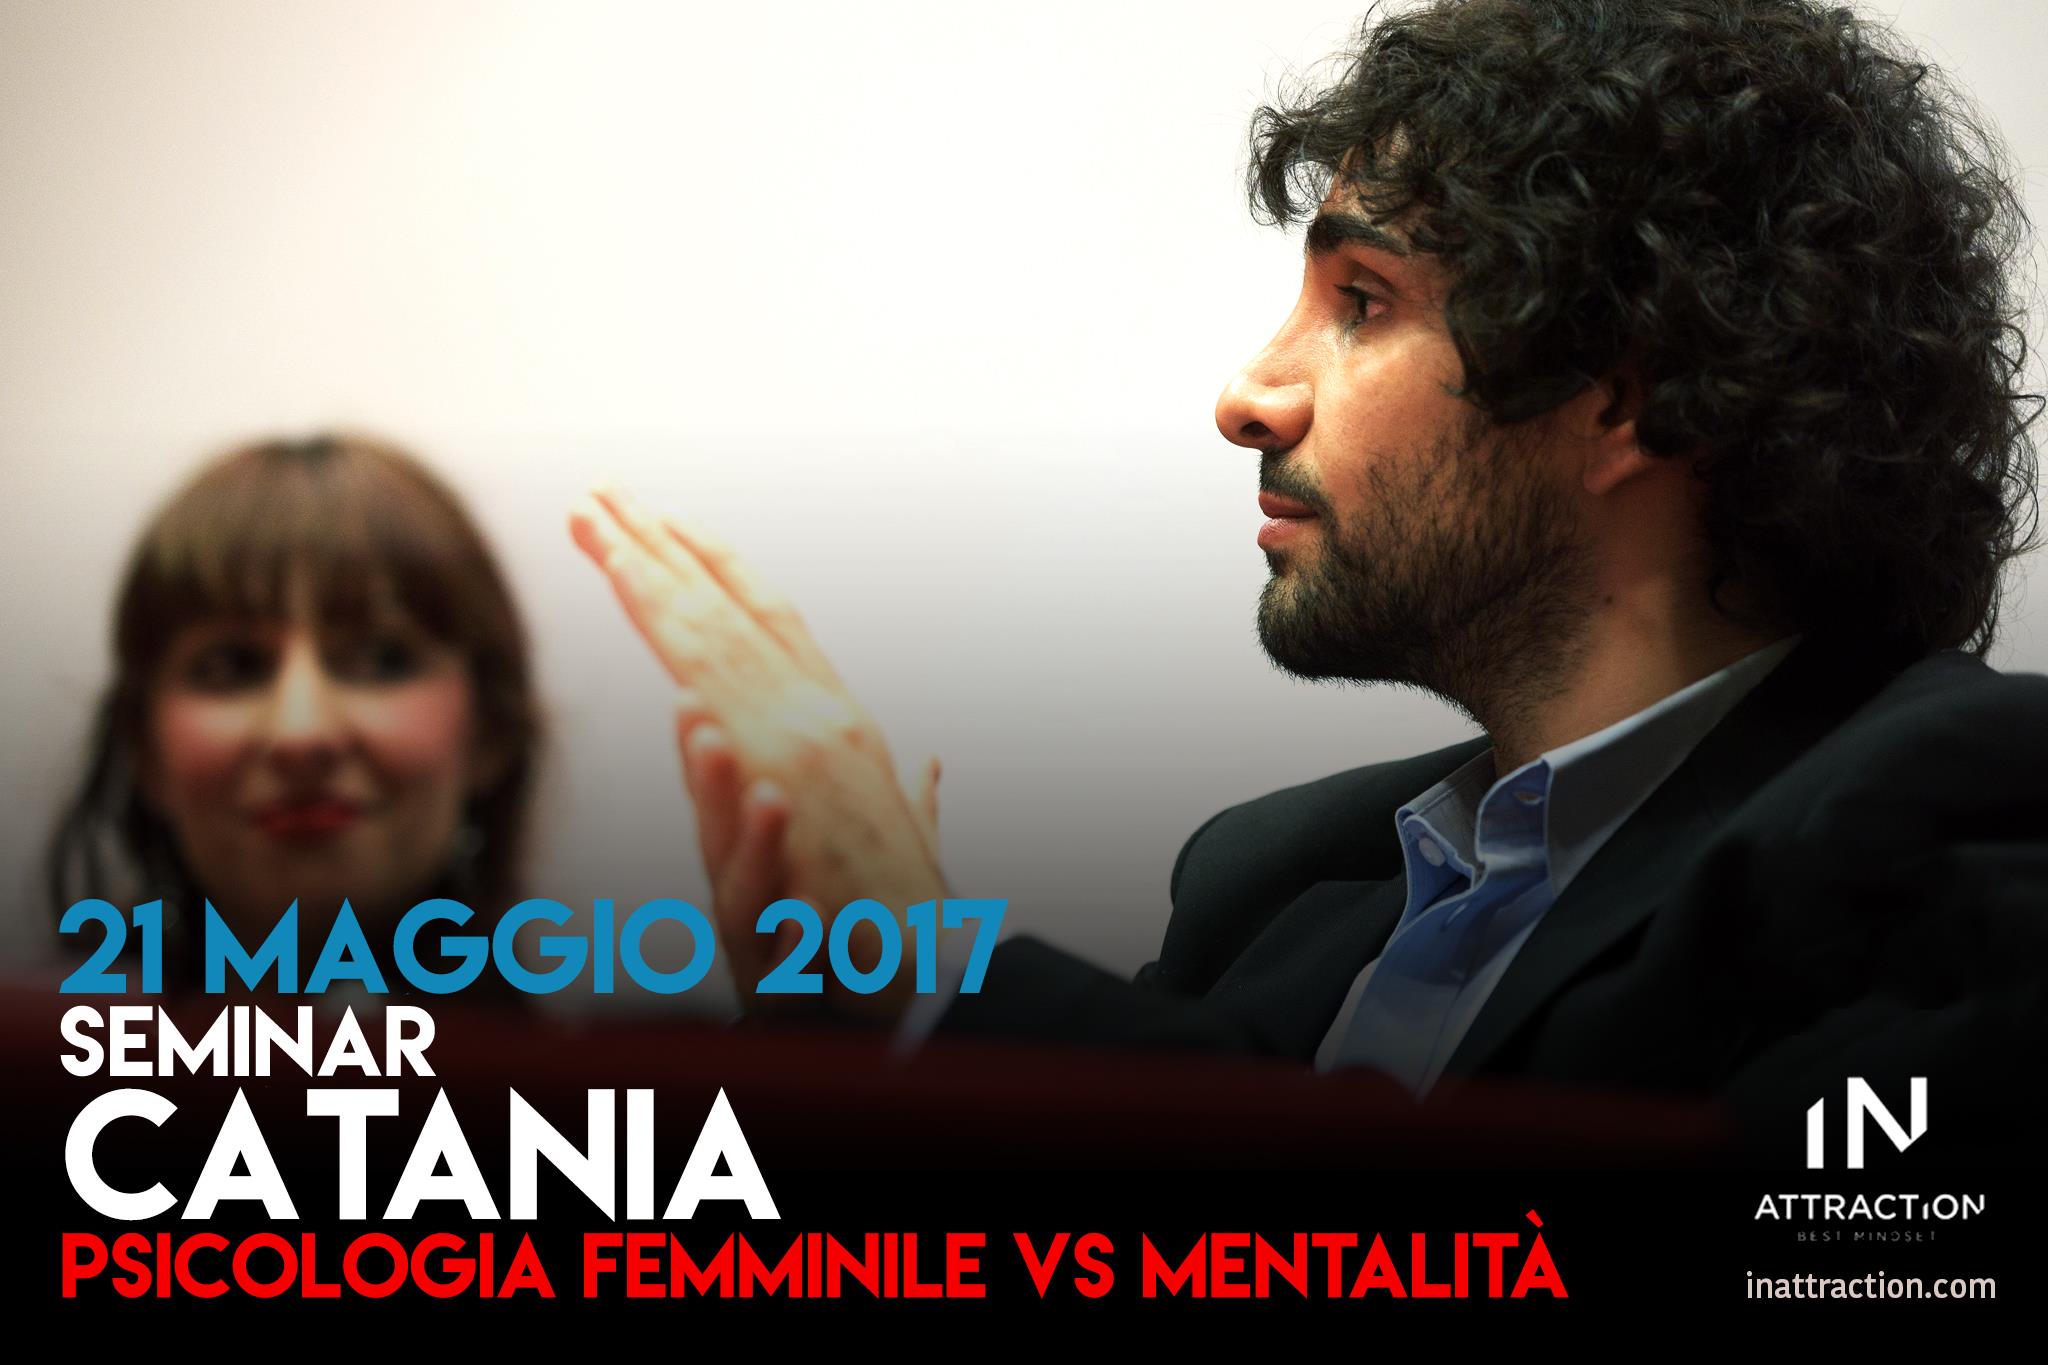 Seminario di Seduzione Catania: “PSICOLOGIA FEMMINILE vs MENTALITÀ” – 21 Maggio 2017